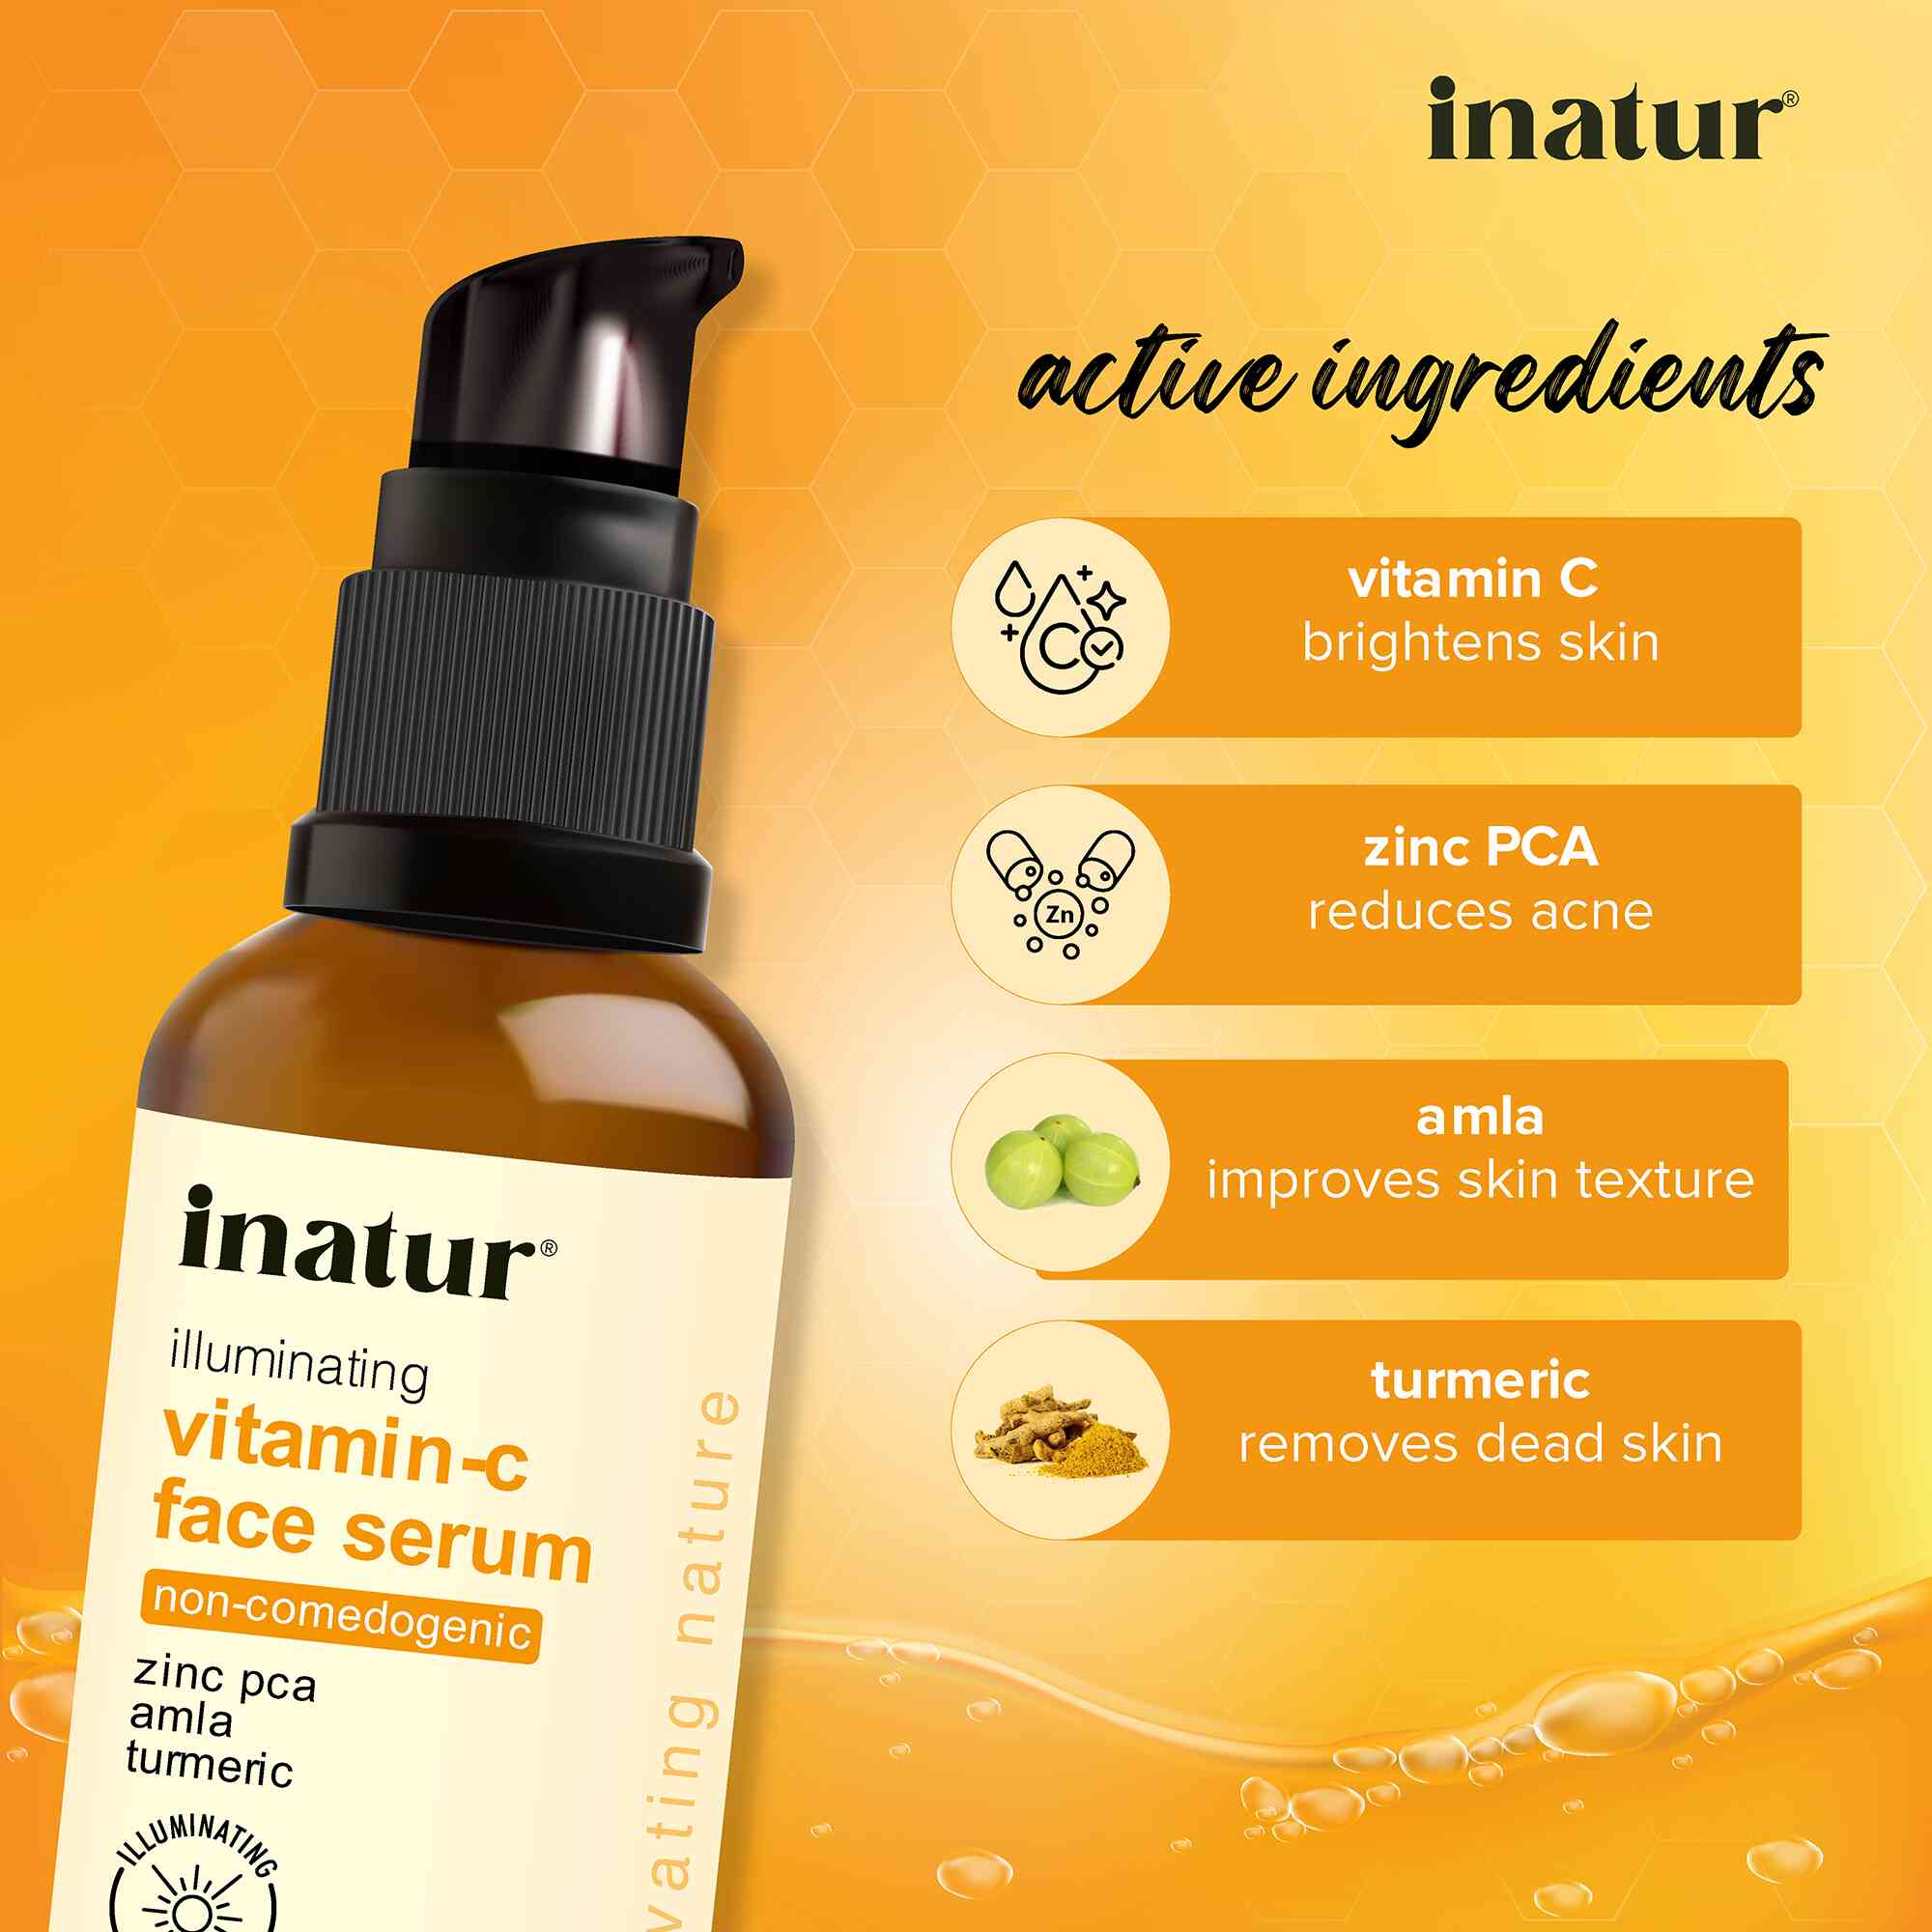 active ingredients of inatur vitamin c face serum